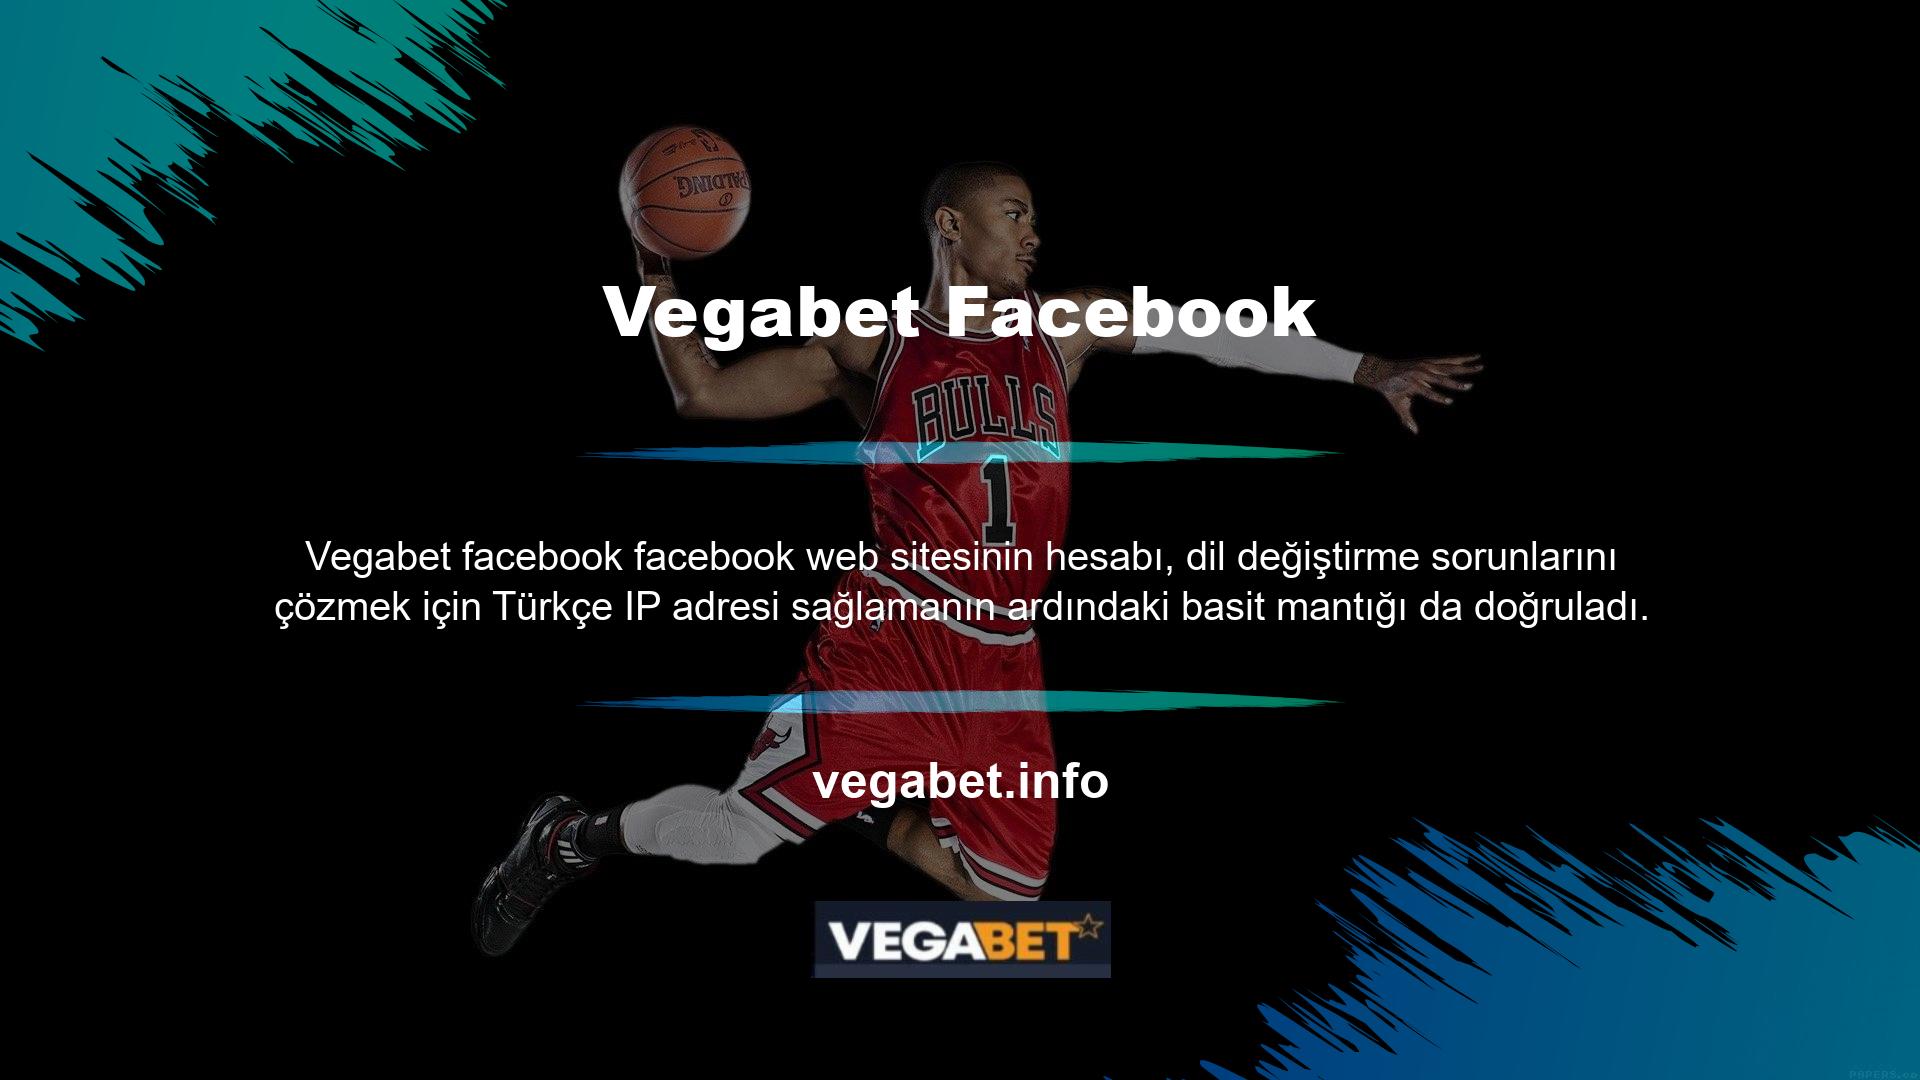 Vegabet Facebook sayfasının Türkçesi mevcut mu? Tüm makaleler Türkçe yazılmıştır